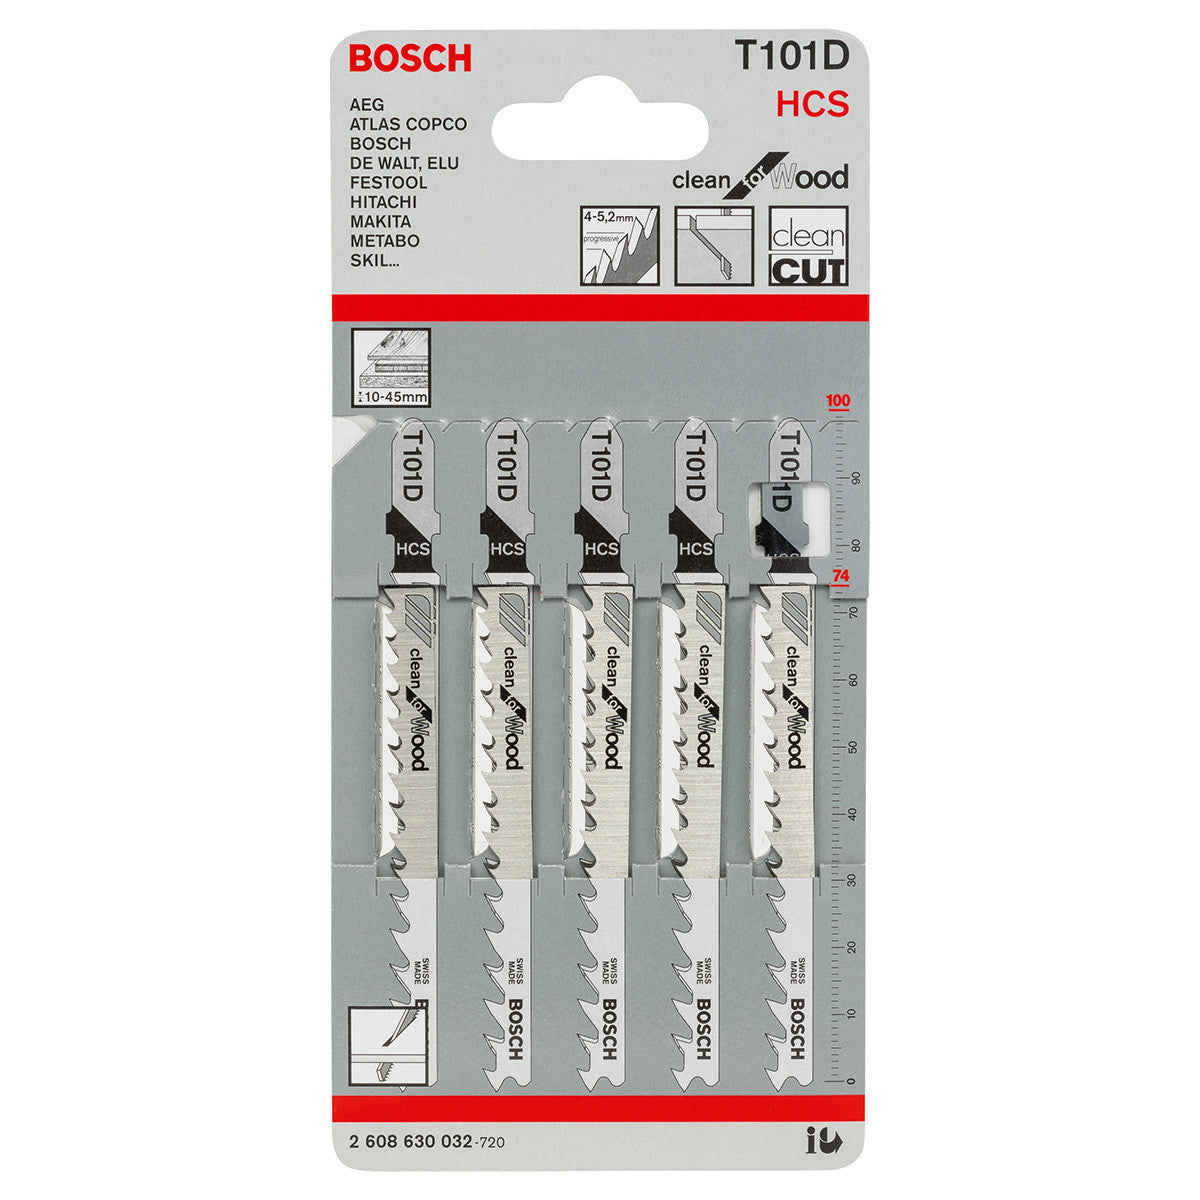 Bosch T101D Wood cutting Jigsaw Blades (5 Pack) - GIGATOOLS.PH